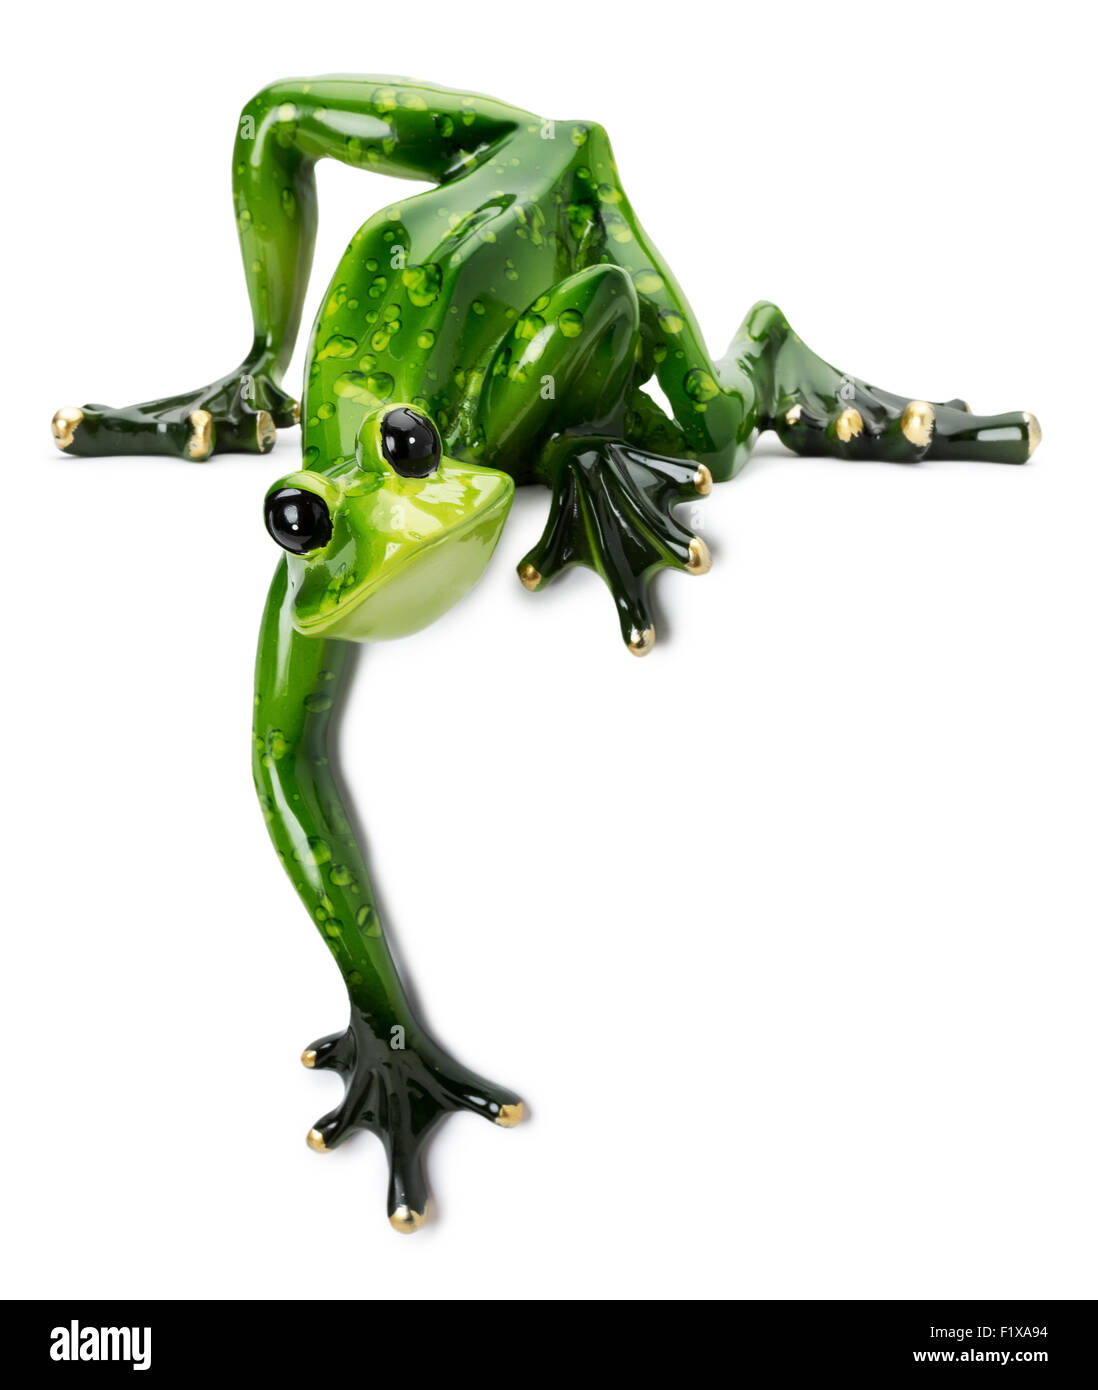 Statue de grenouille verte sur le fond blanc. Banque D'Images